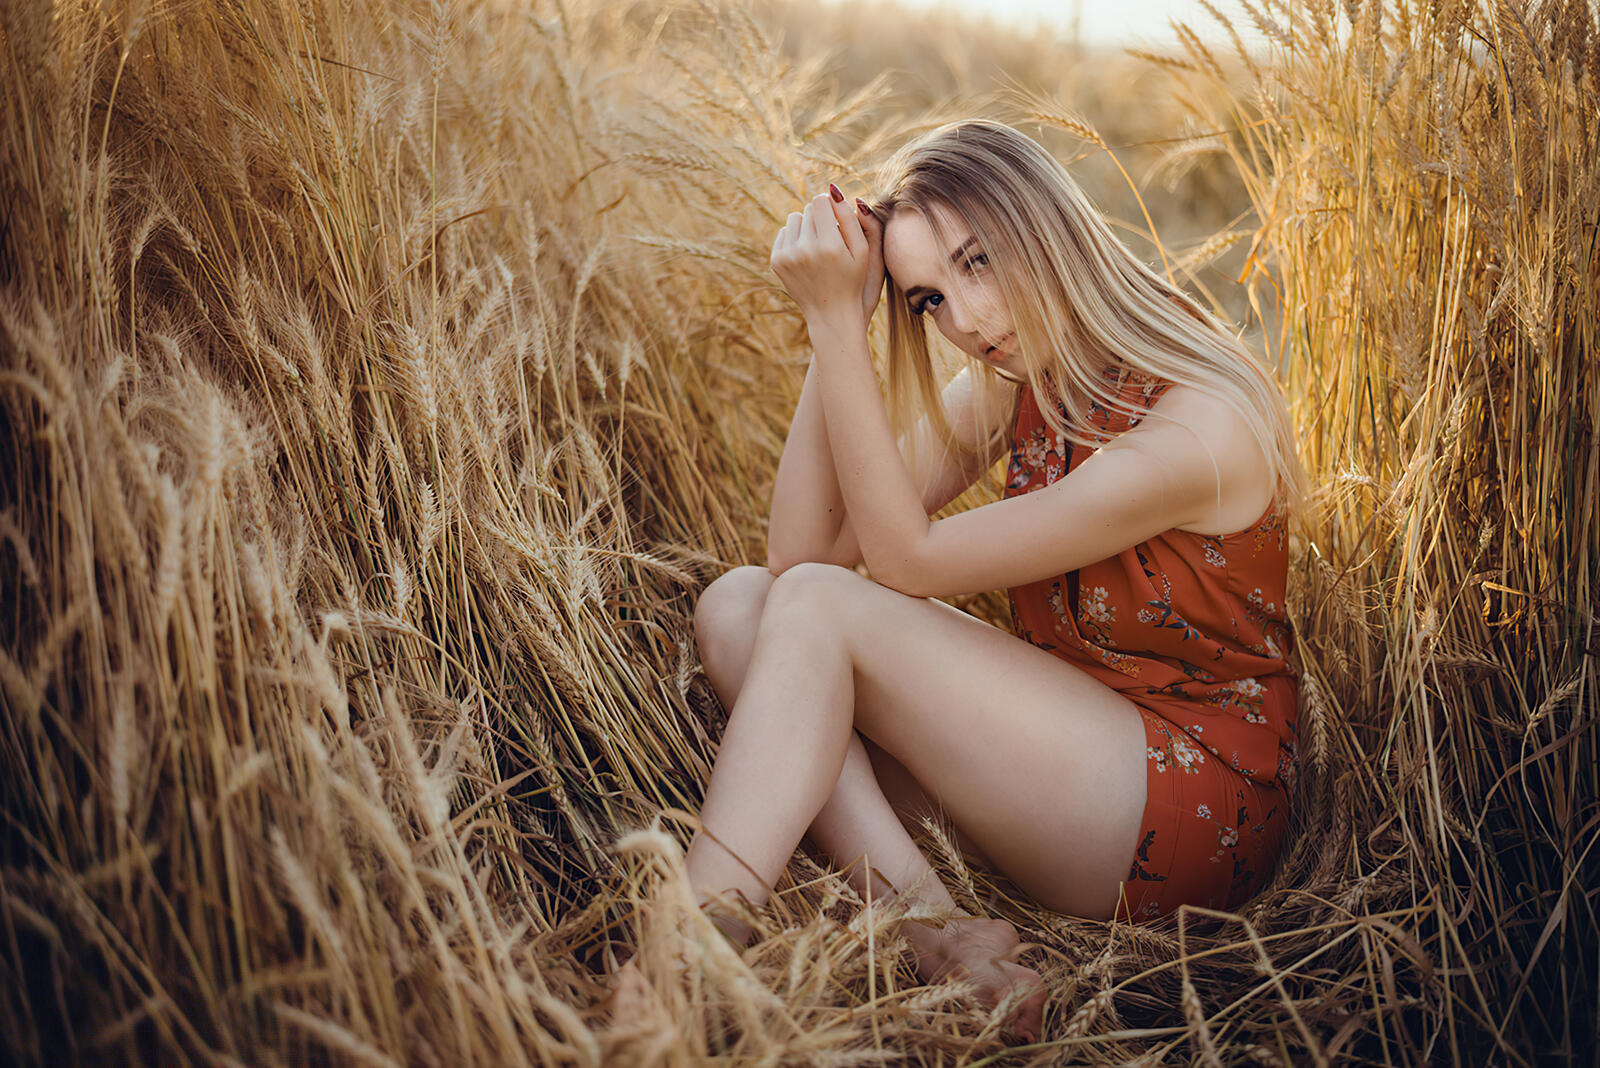 Бесплатное фото Девушка сидит в высокой траве пшеницы